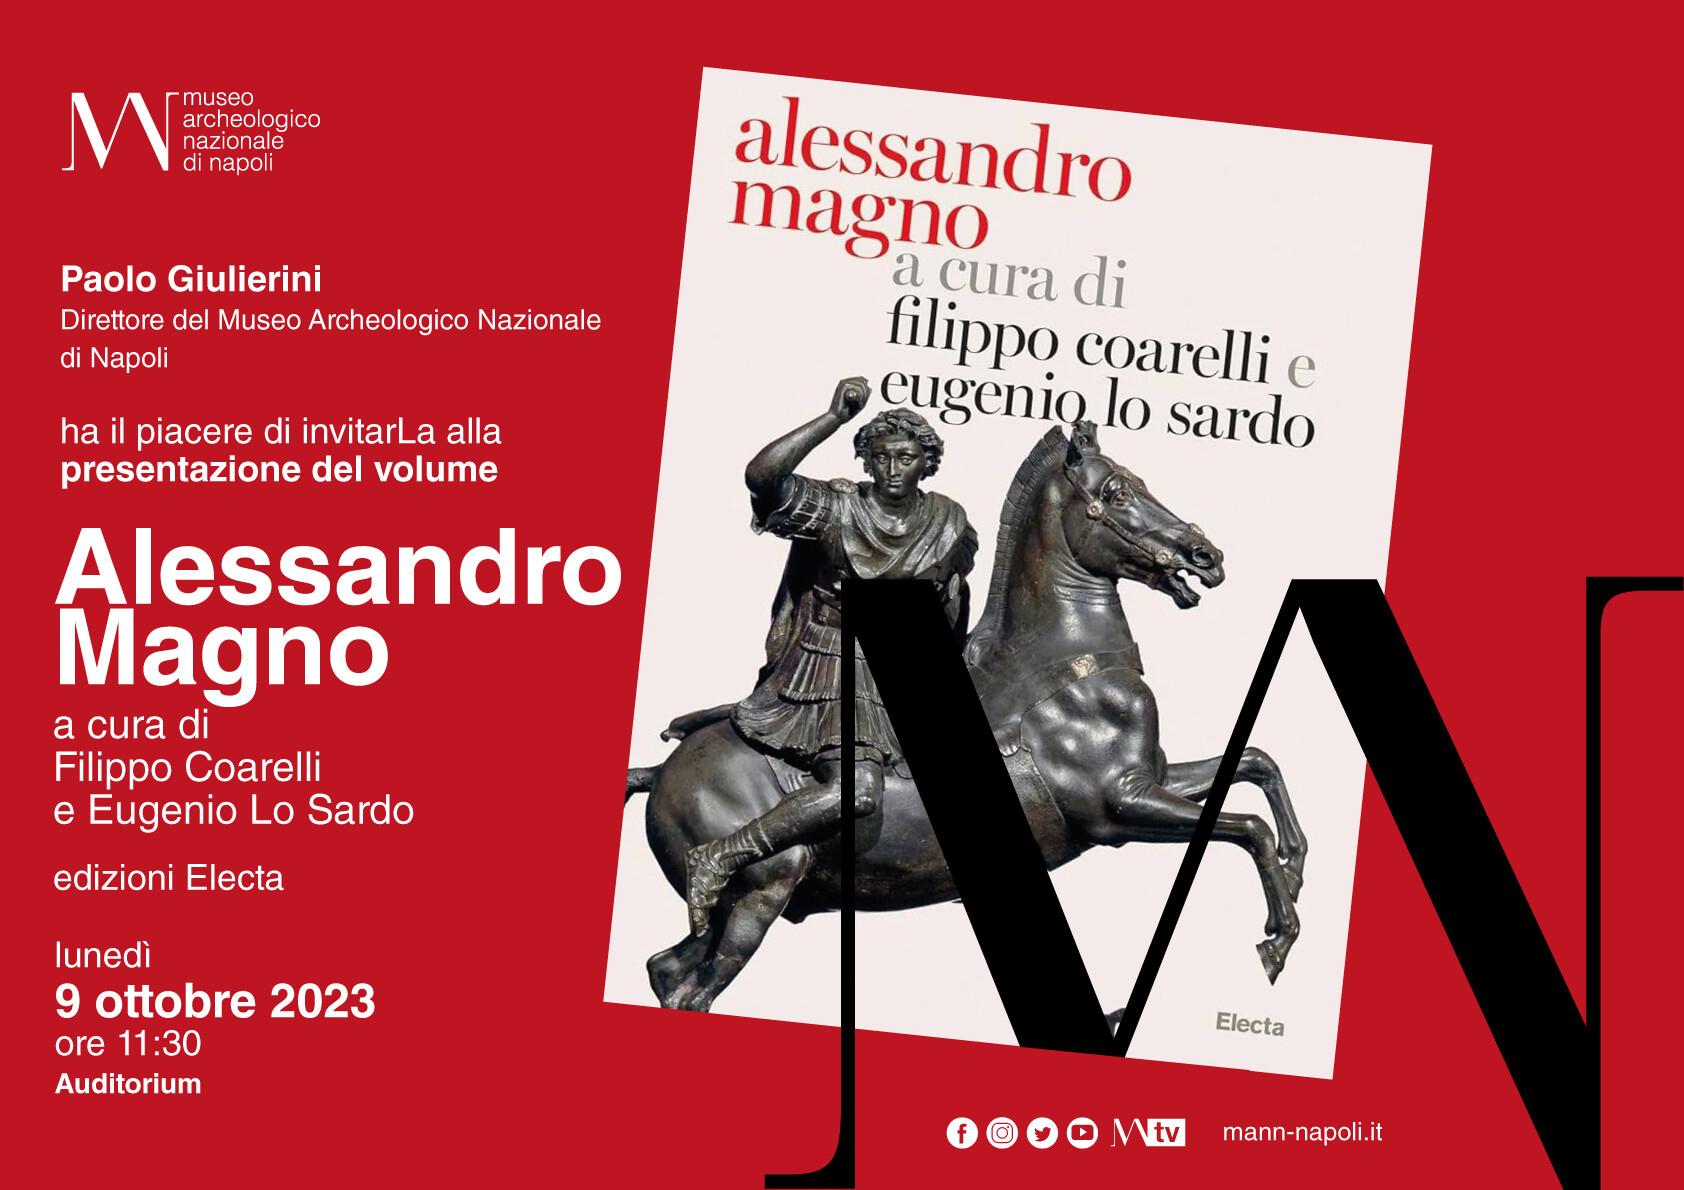 Al MANN presentazione del volume "Alessandro Magno", a cura di Filippo Coarelli ed Eugenio Lo Sardo